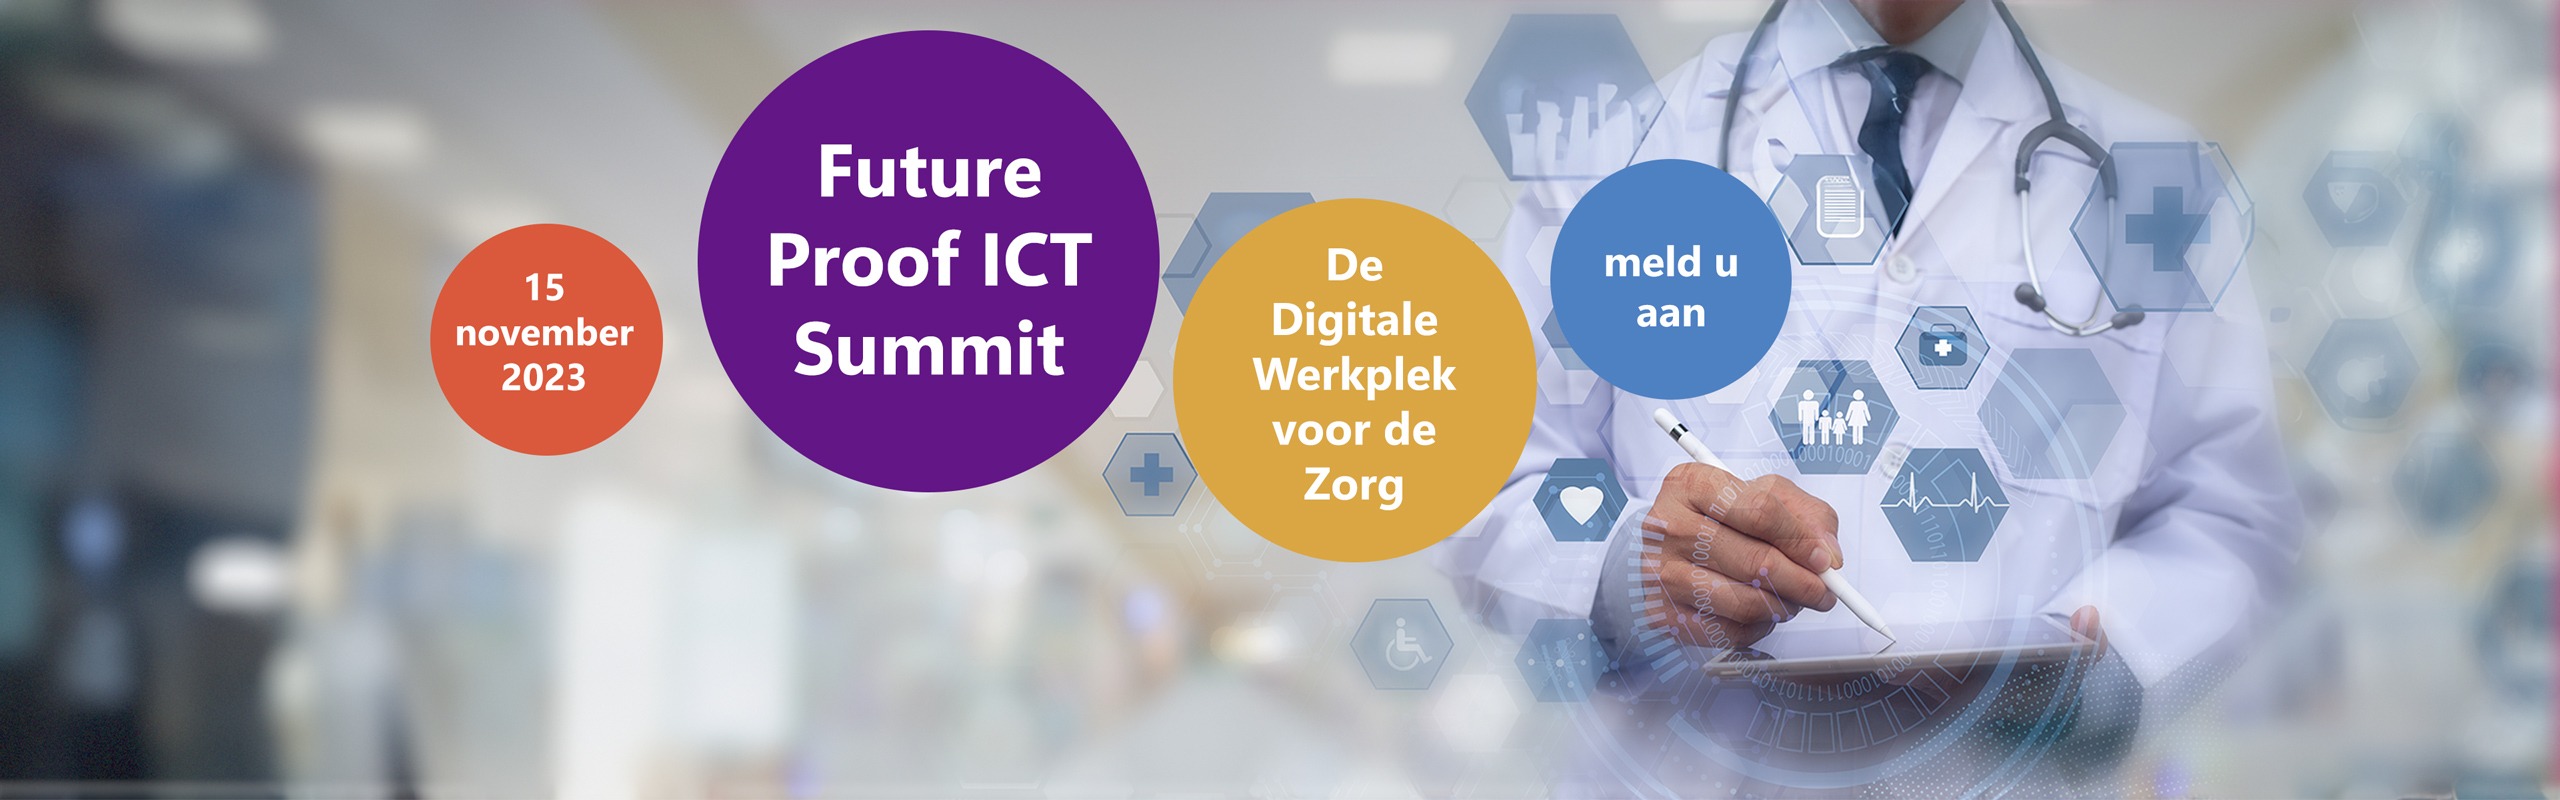 De Digitale Werkplek voor de Zorg. Future Proof ICT Summit. 15 november 2023